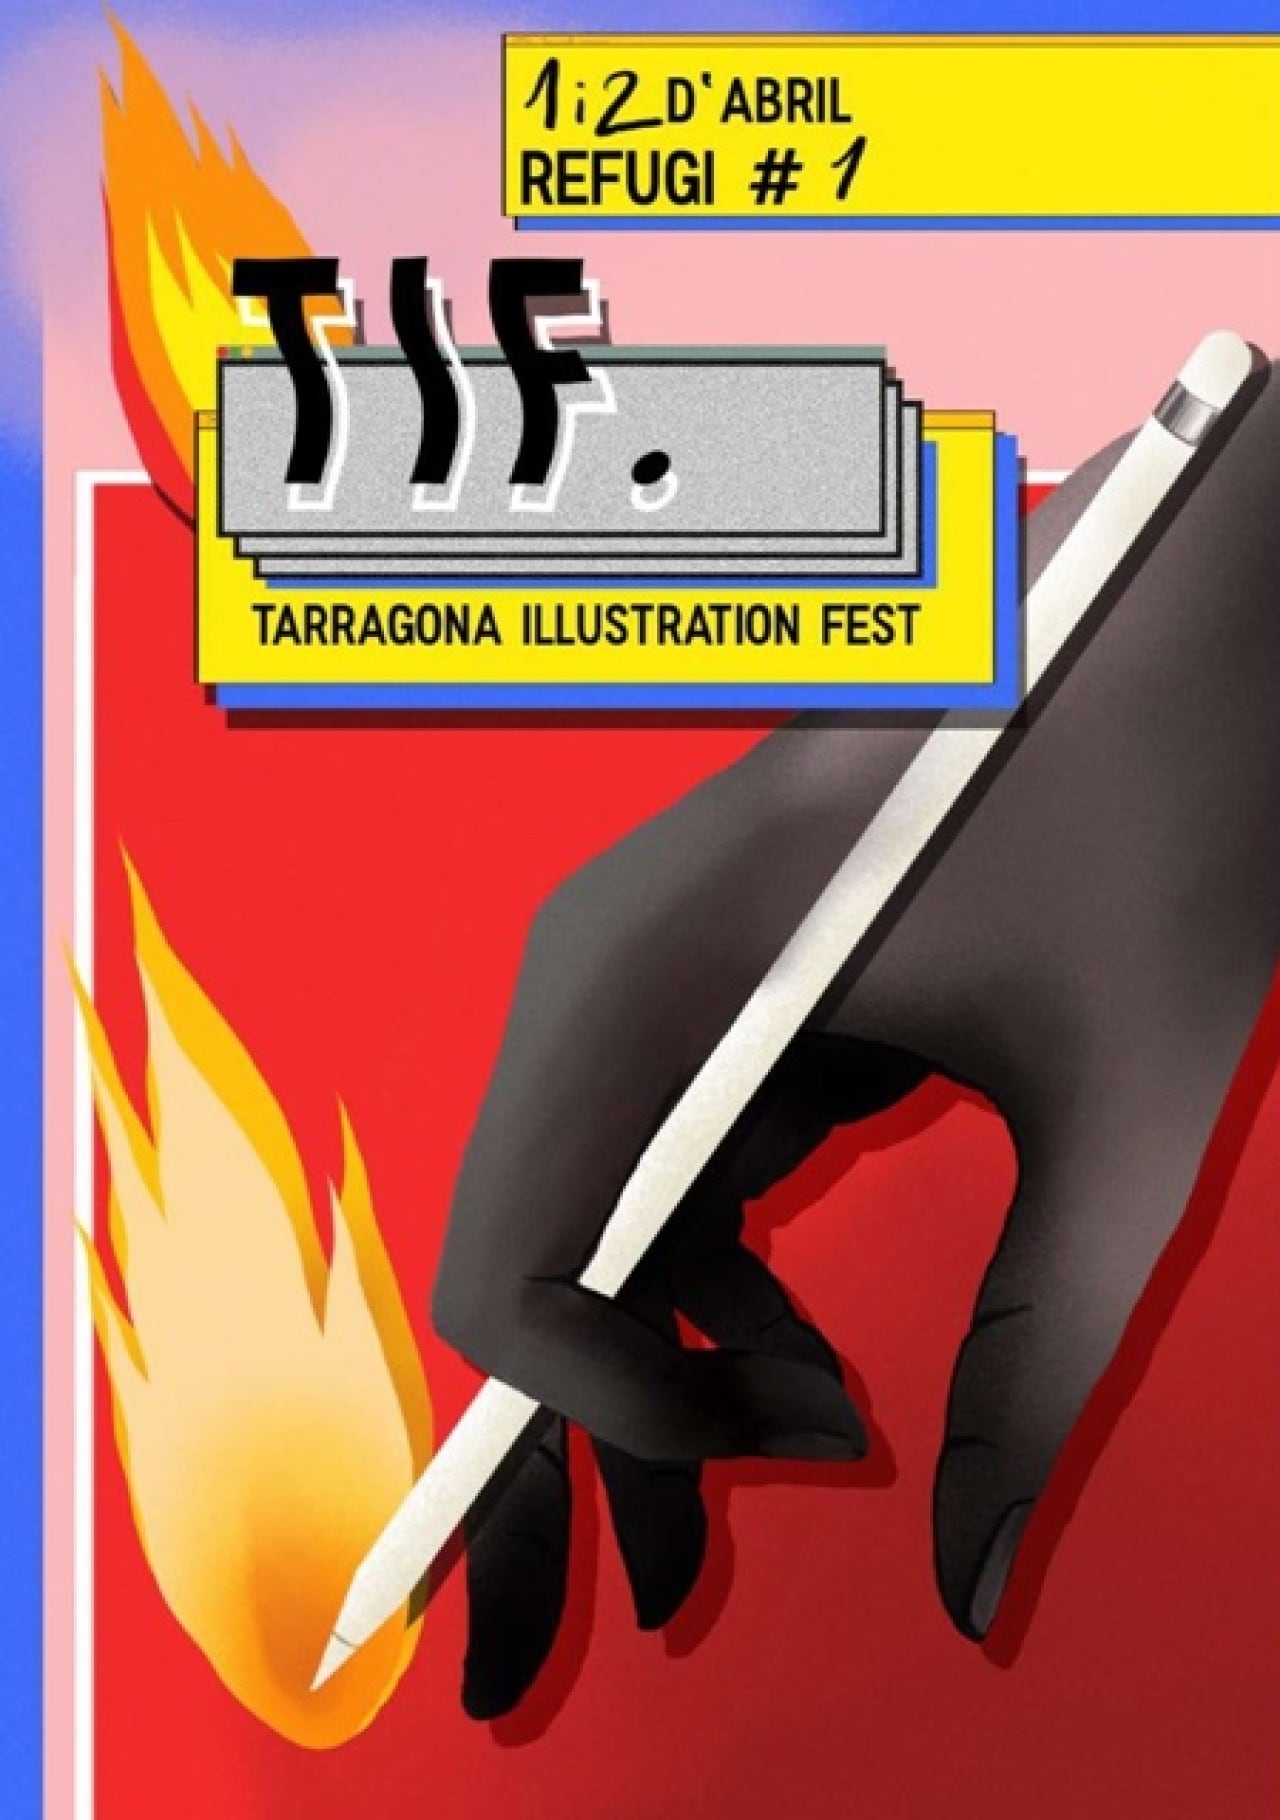 El Tarragona Illustration Fest (TIF) presenta aquest cap de setmana al Refugi 1 el talent local de professionals de l’escriptura, l’edició, la direcció d’art i la il·lustració